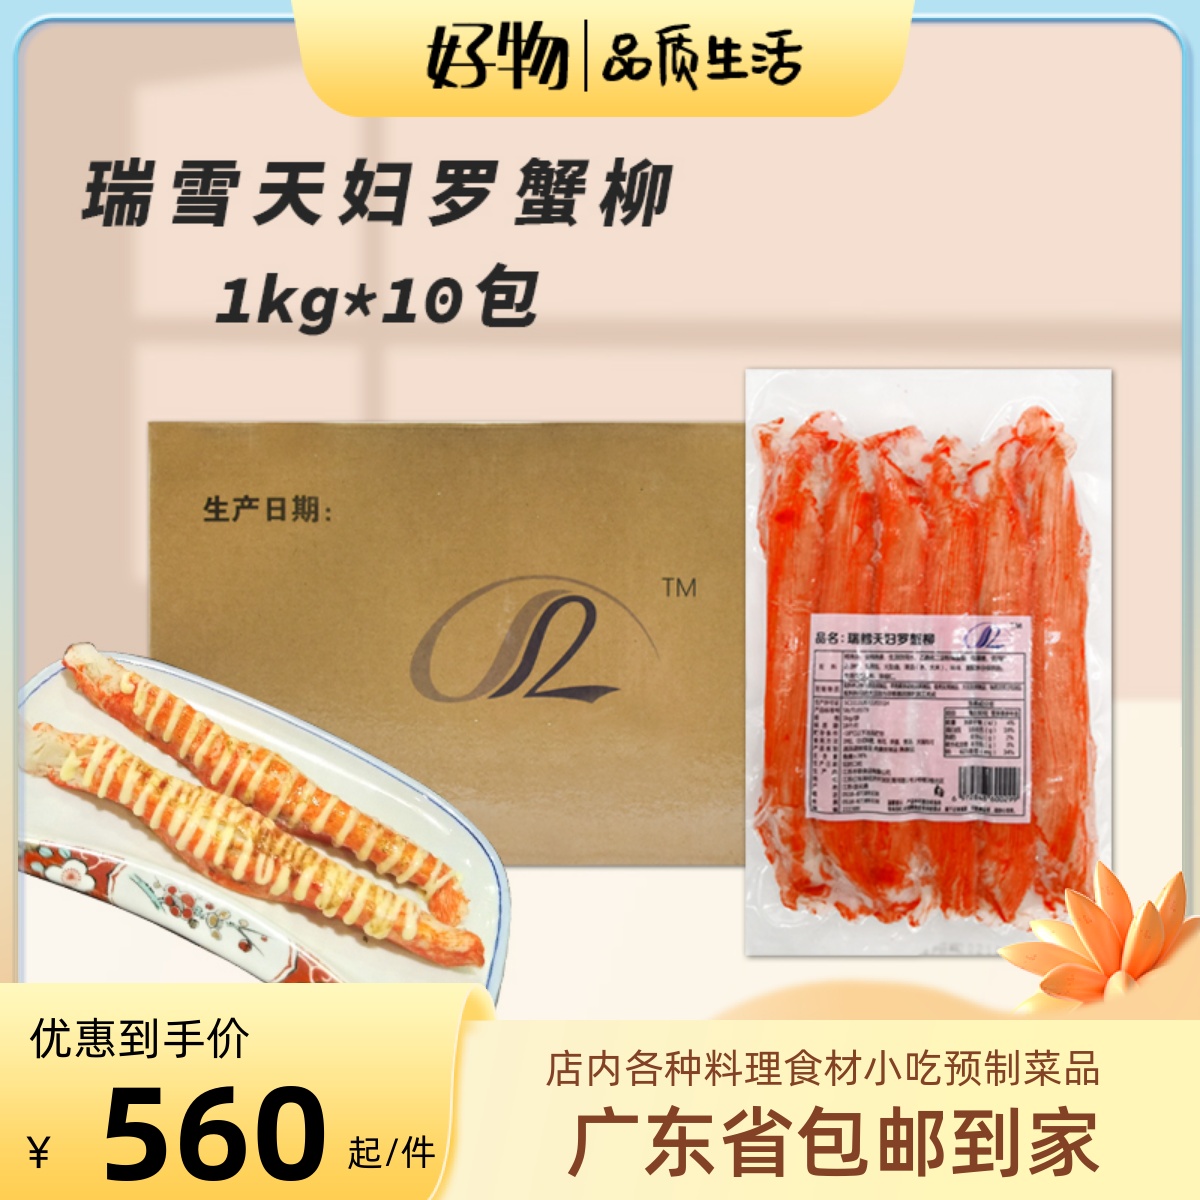 瑞雪巨型蟹柳1kg*10包冷冻生鲜海鲜蟹棒日式寿司天妇罗巨无霸蟹柳